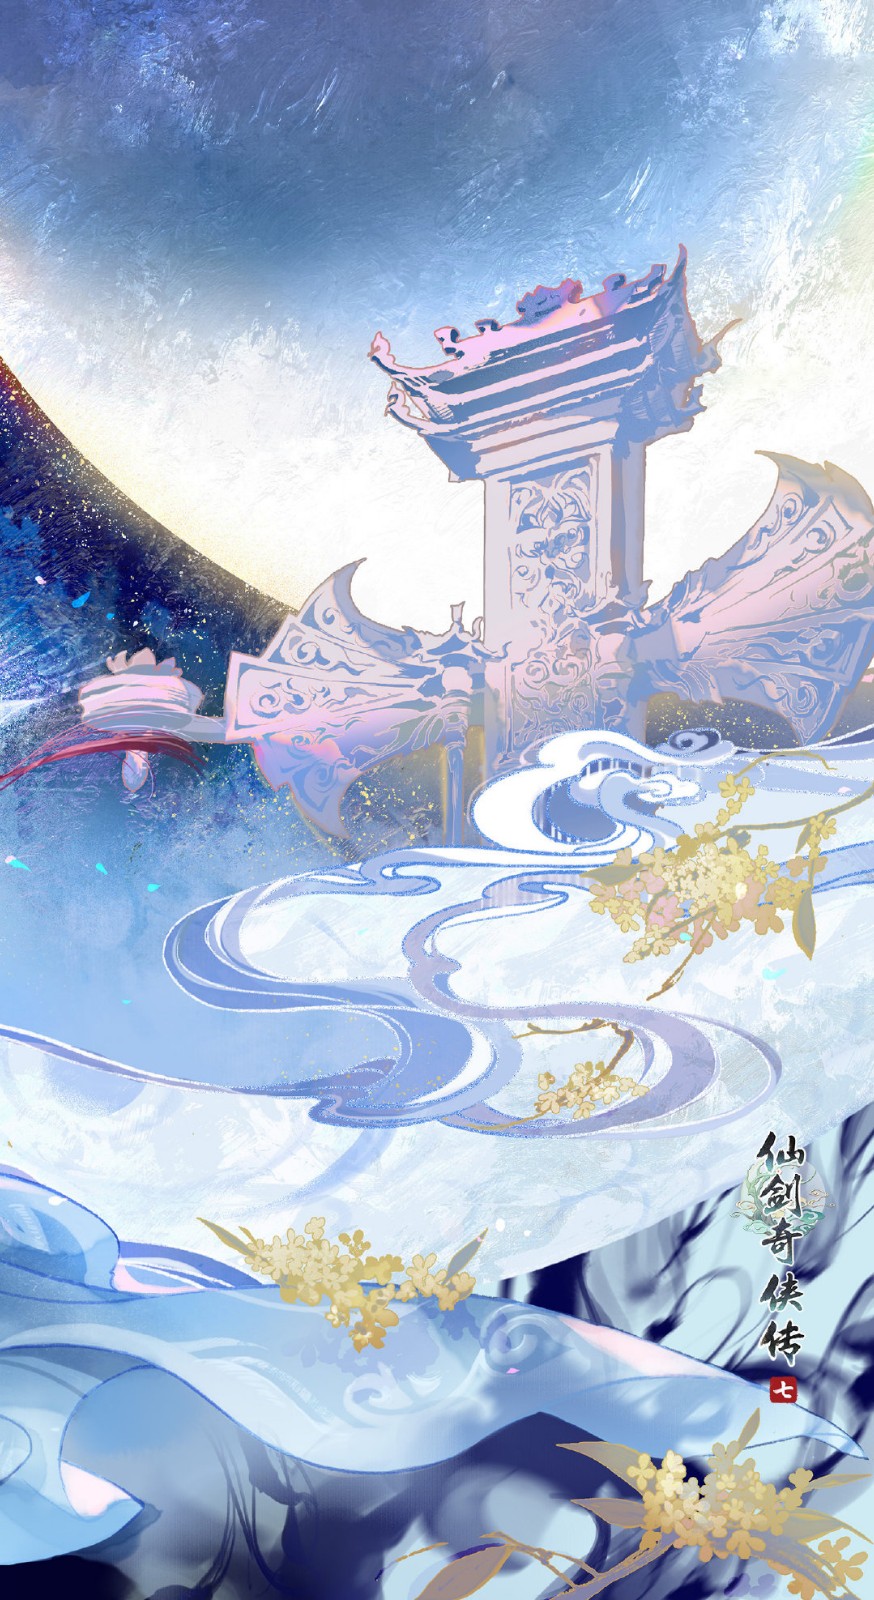 《仙剑奇侠传7》发布中秋美食壁纸 祝大家阖家团圆健康平安插图3